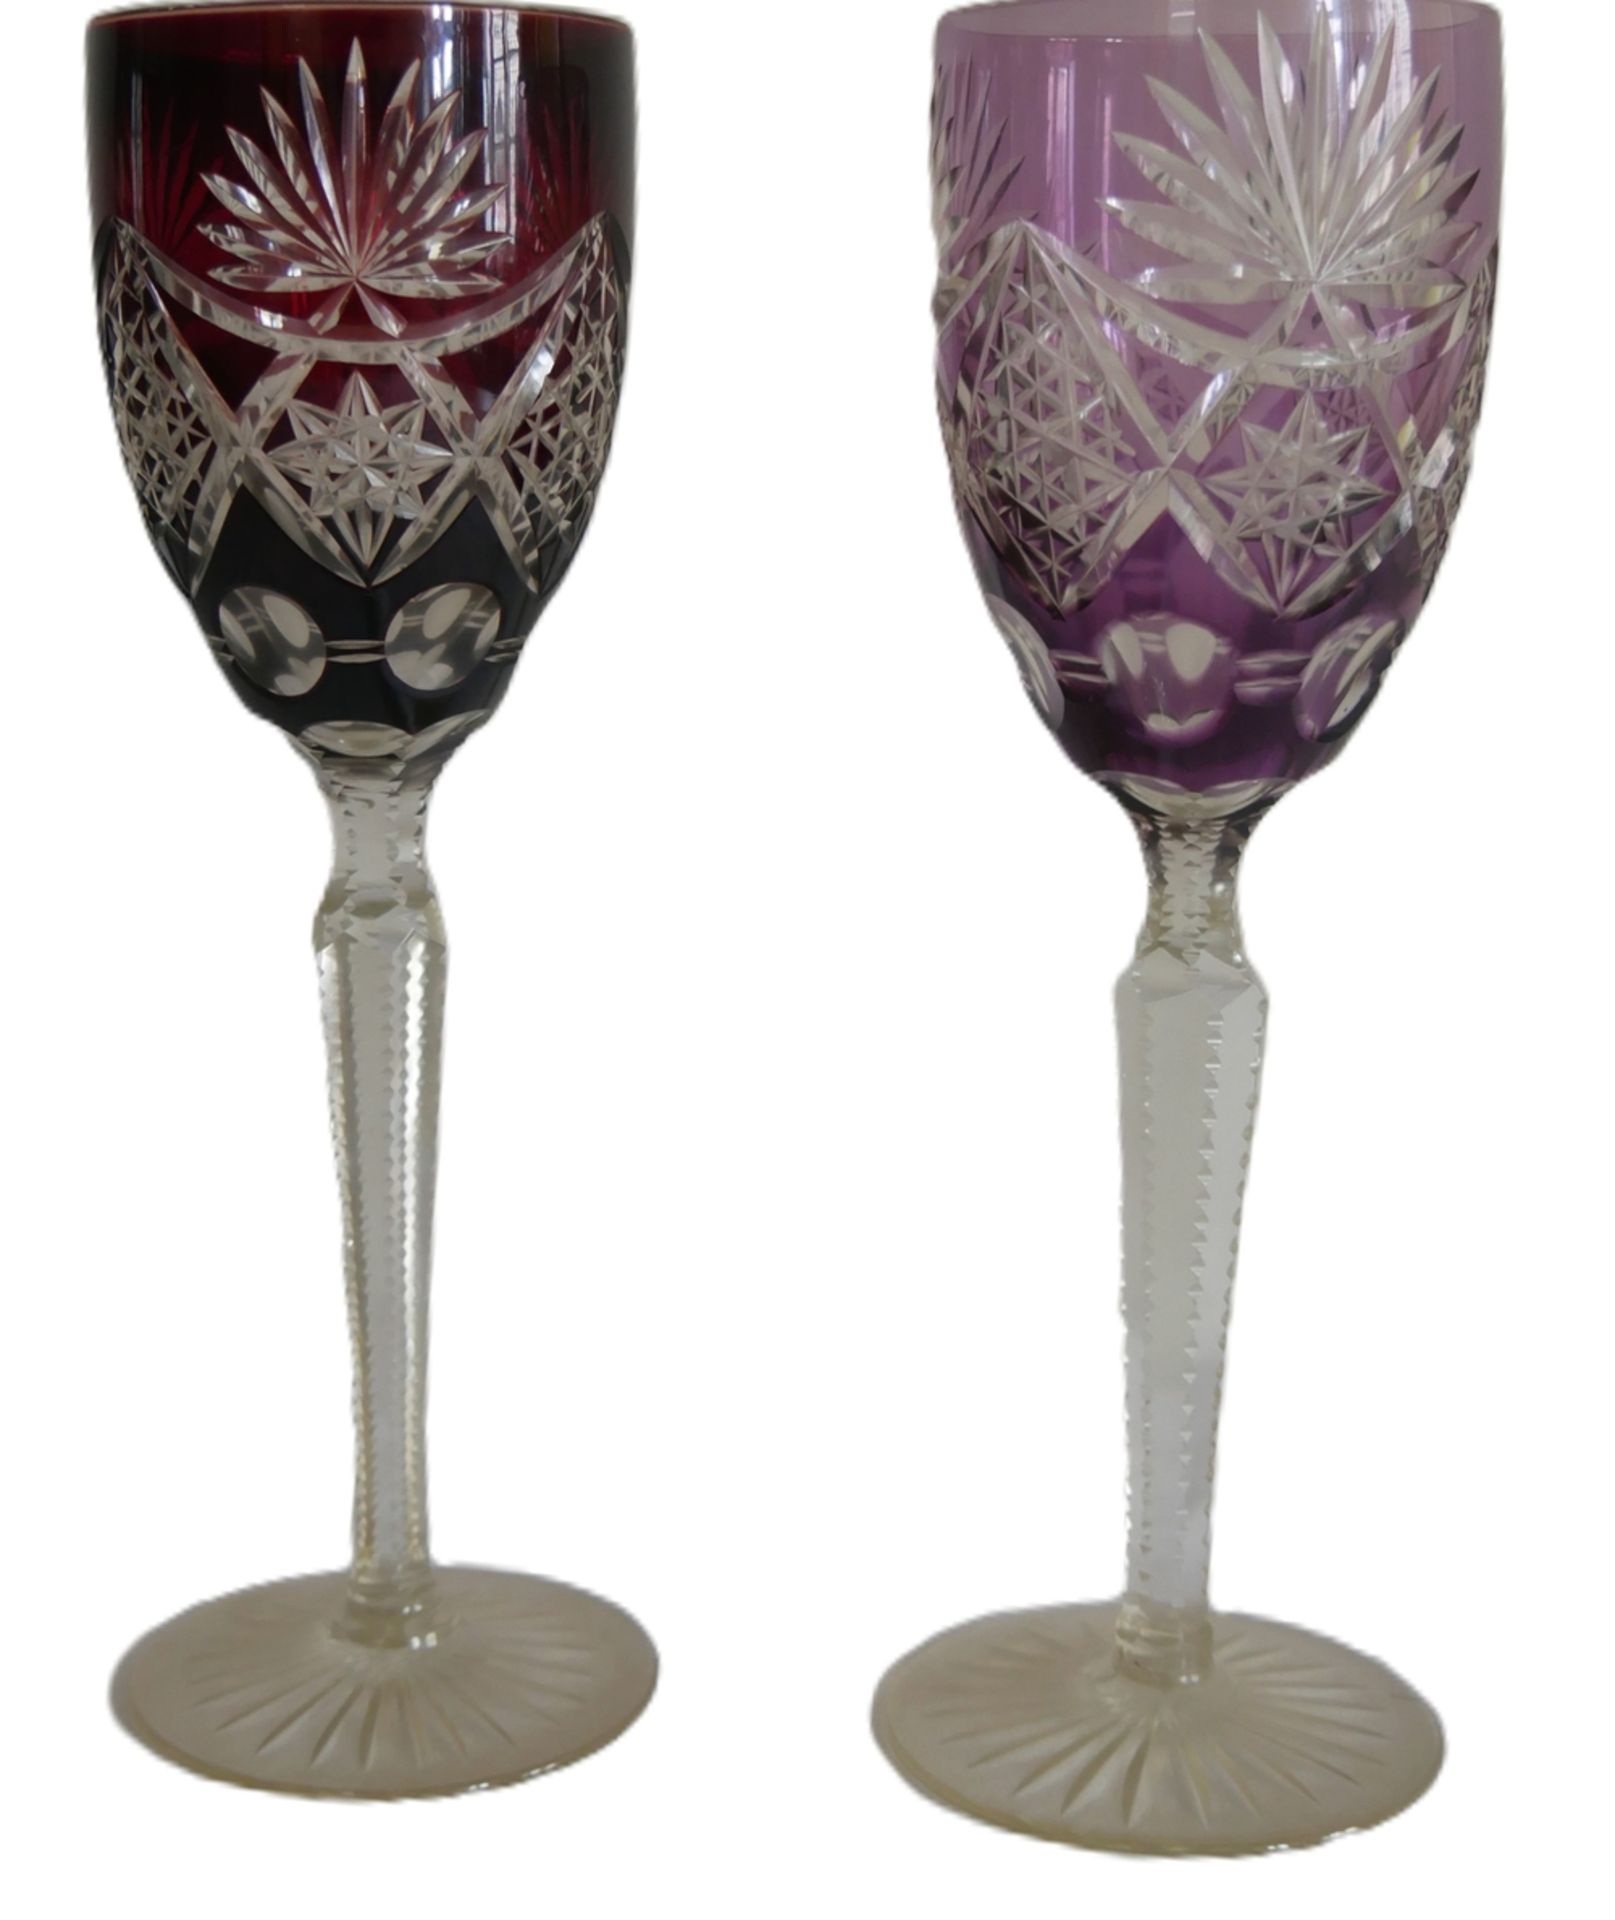 2 farbige Weinkelche Kristallglas, 1x rubinrot und 1x lila.